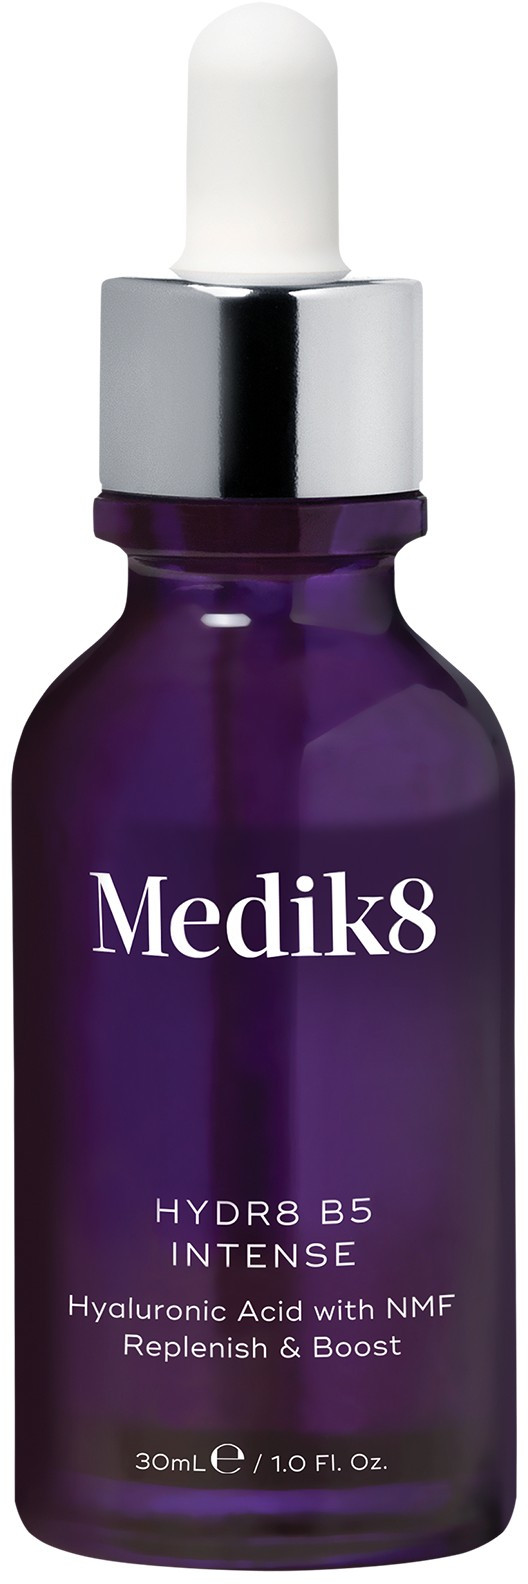 Medik8 Hydr8 B5 Intense Intenzívne gélové hydratačné sérum 30 ml